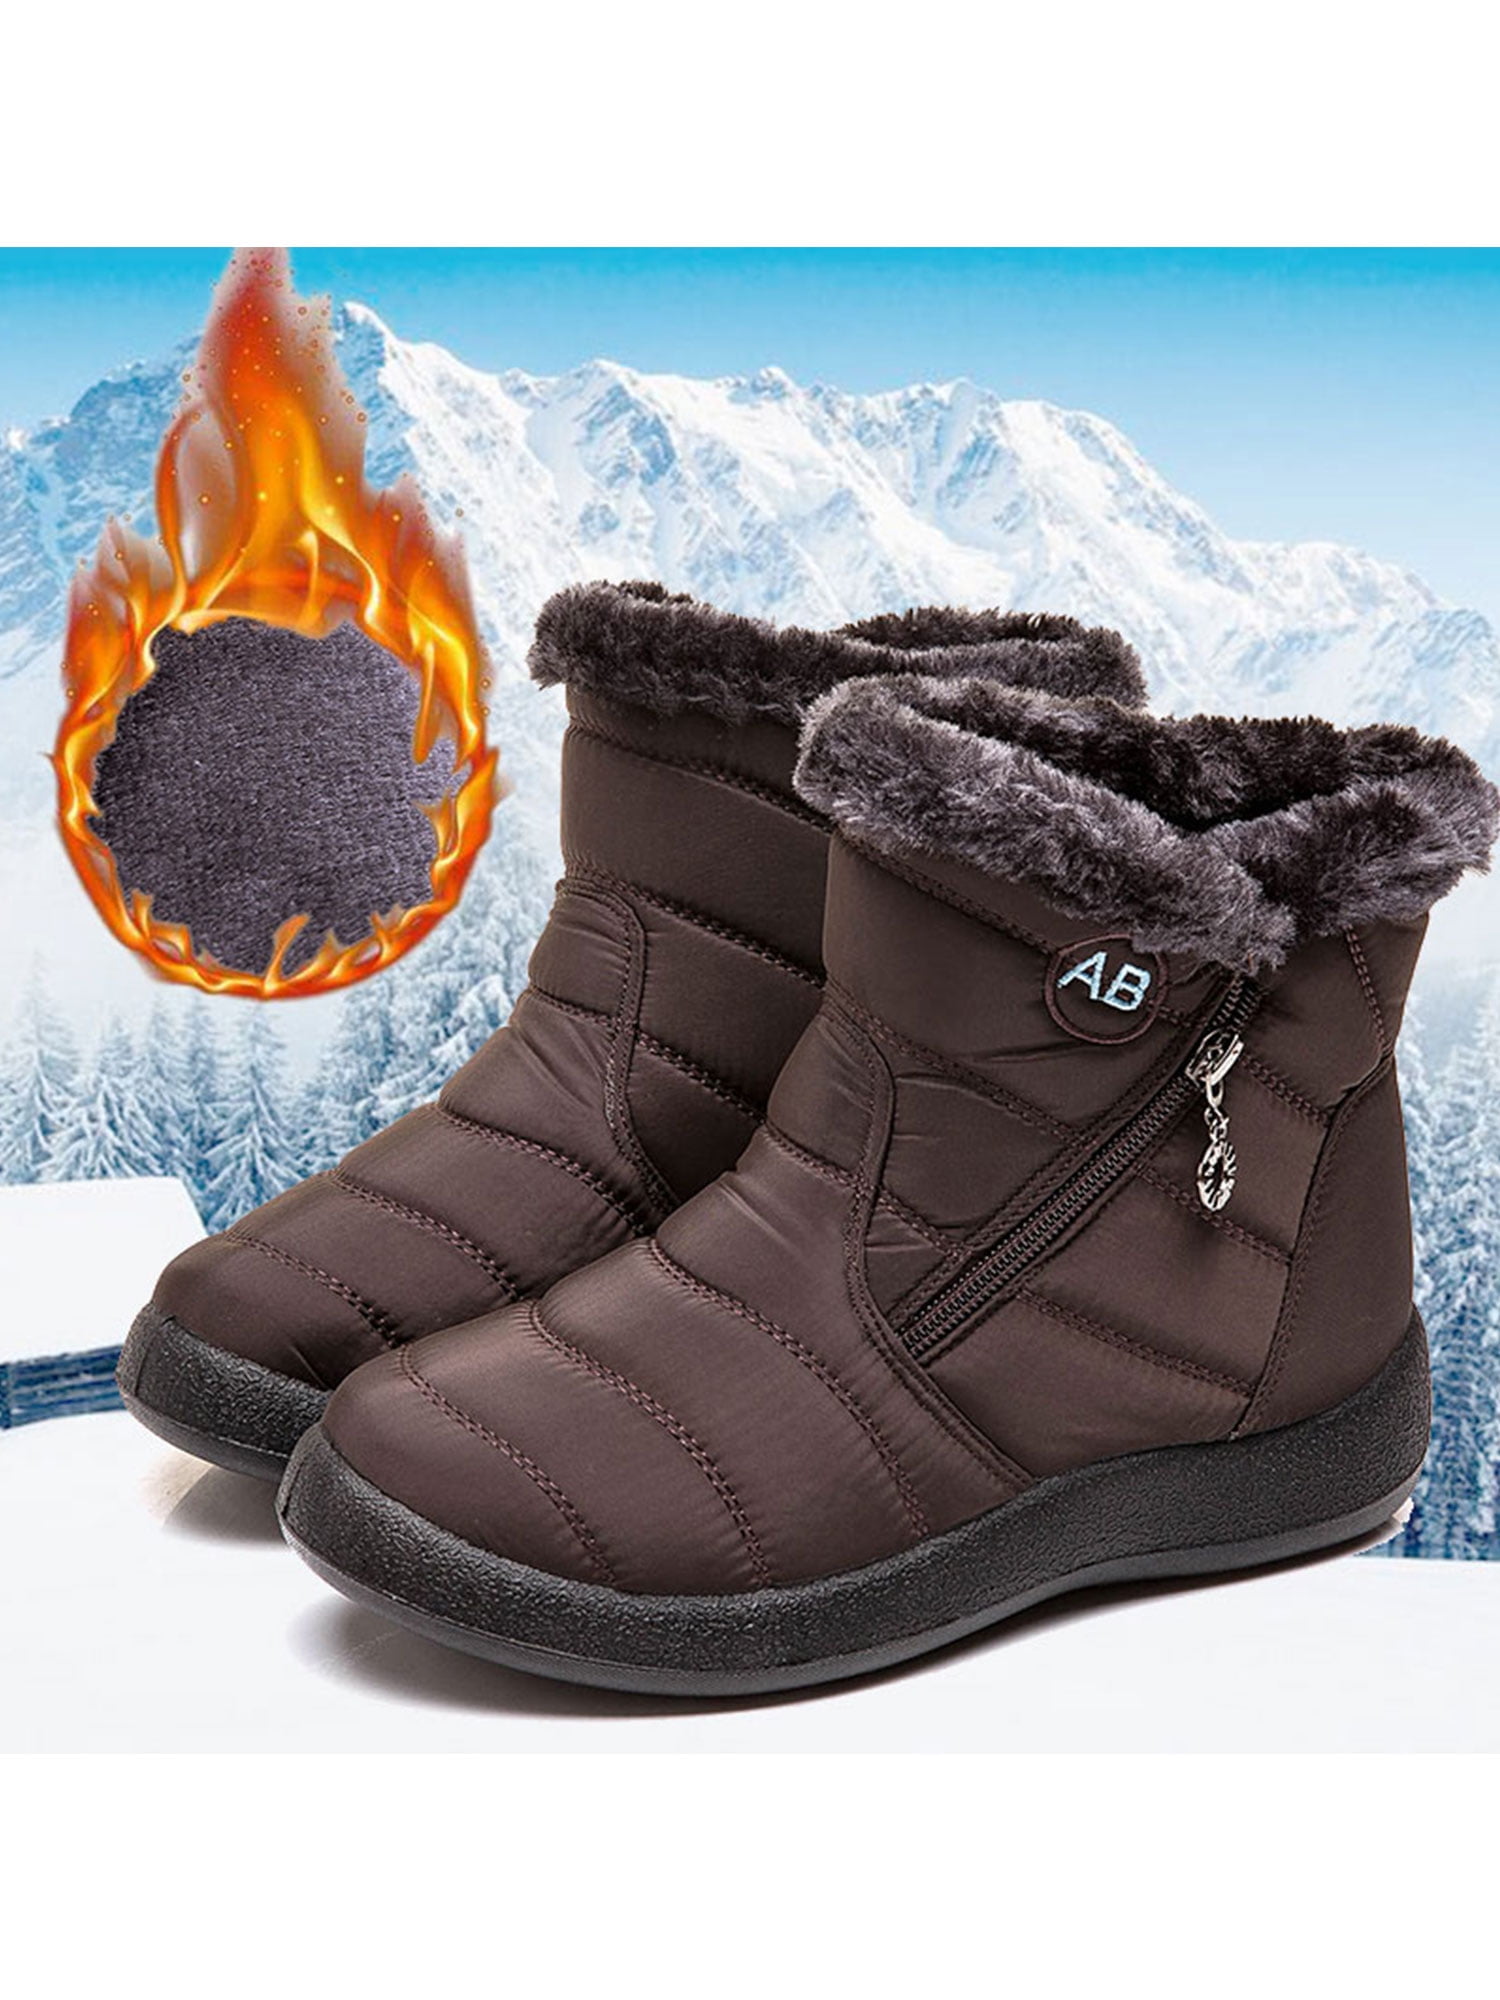 Tenmix Womens Snow Boots Waterproof Winter Boots Wide Width Winter ...